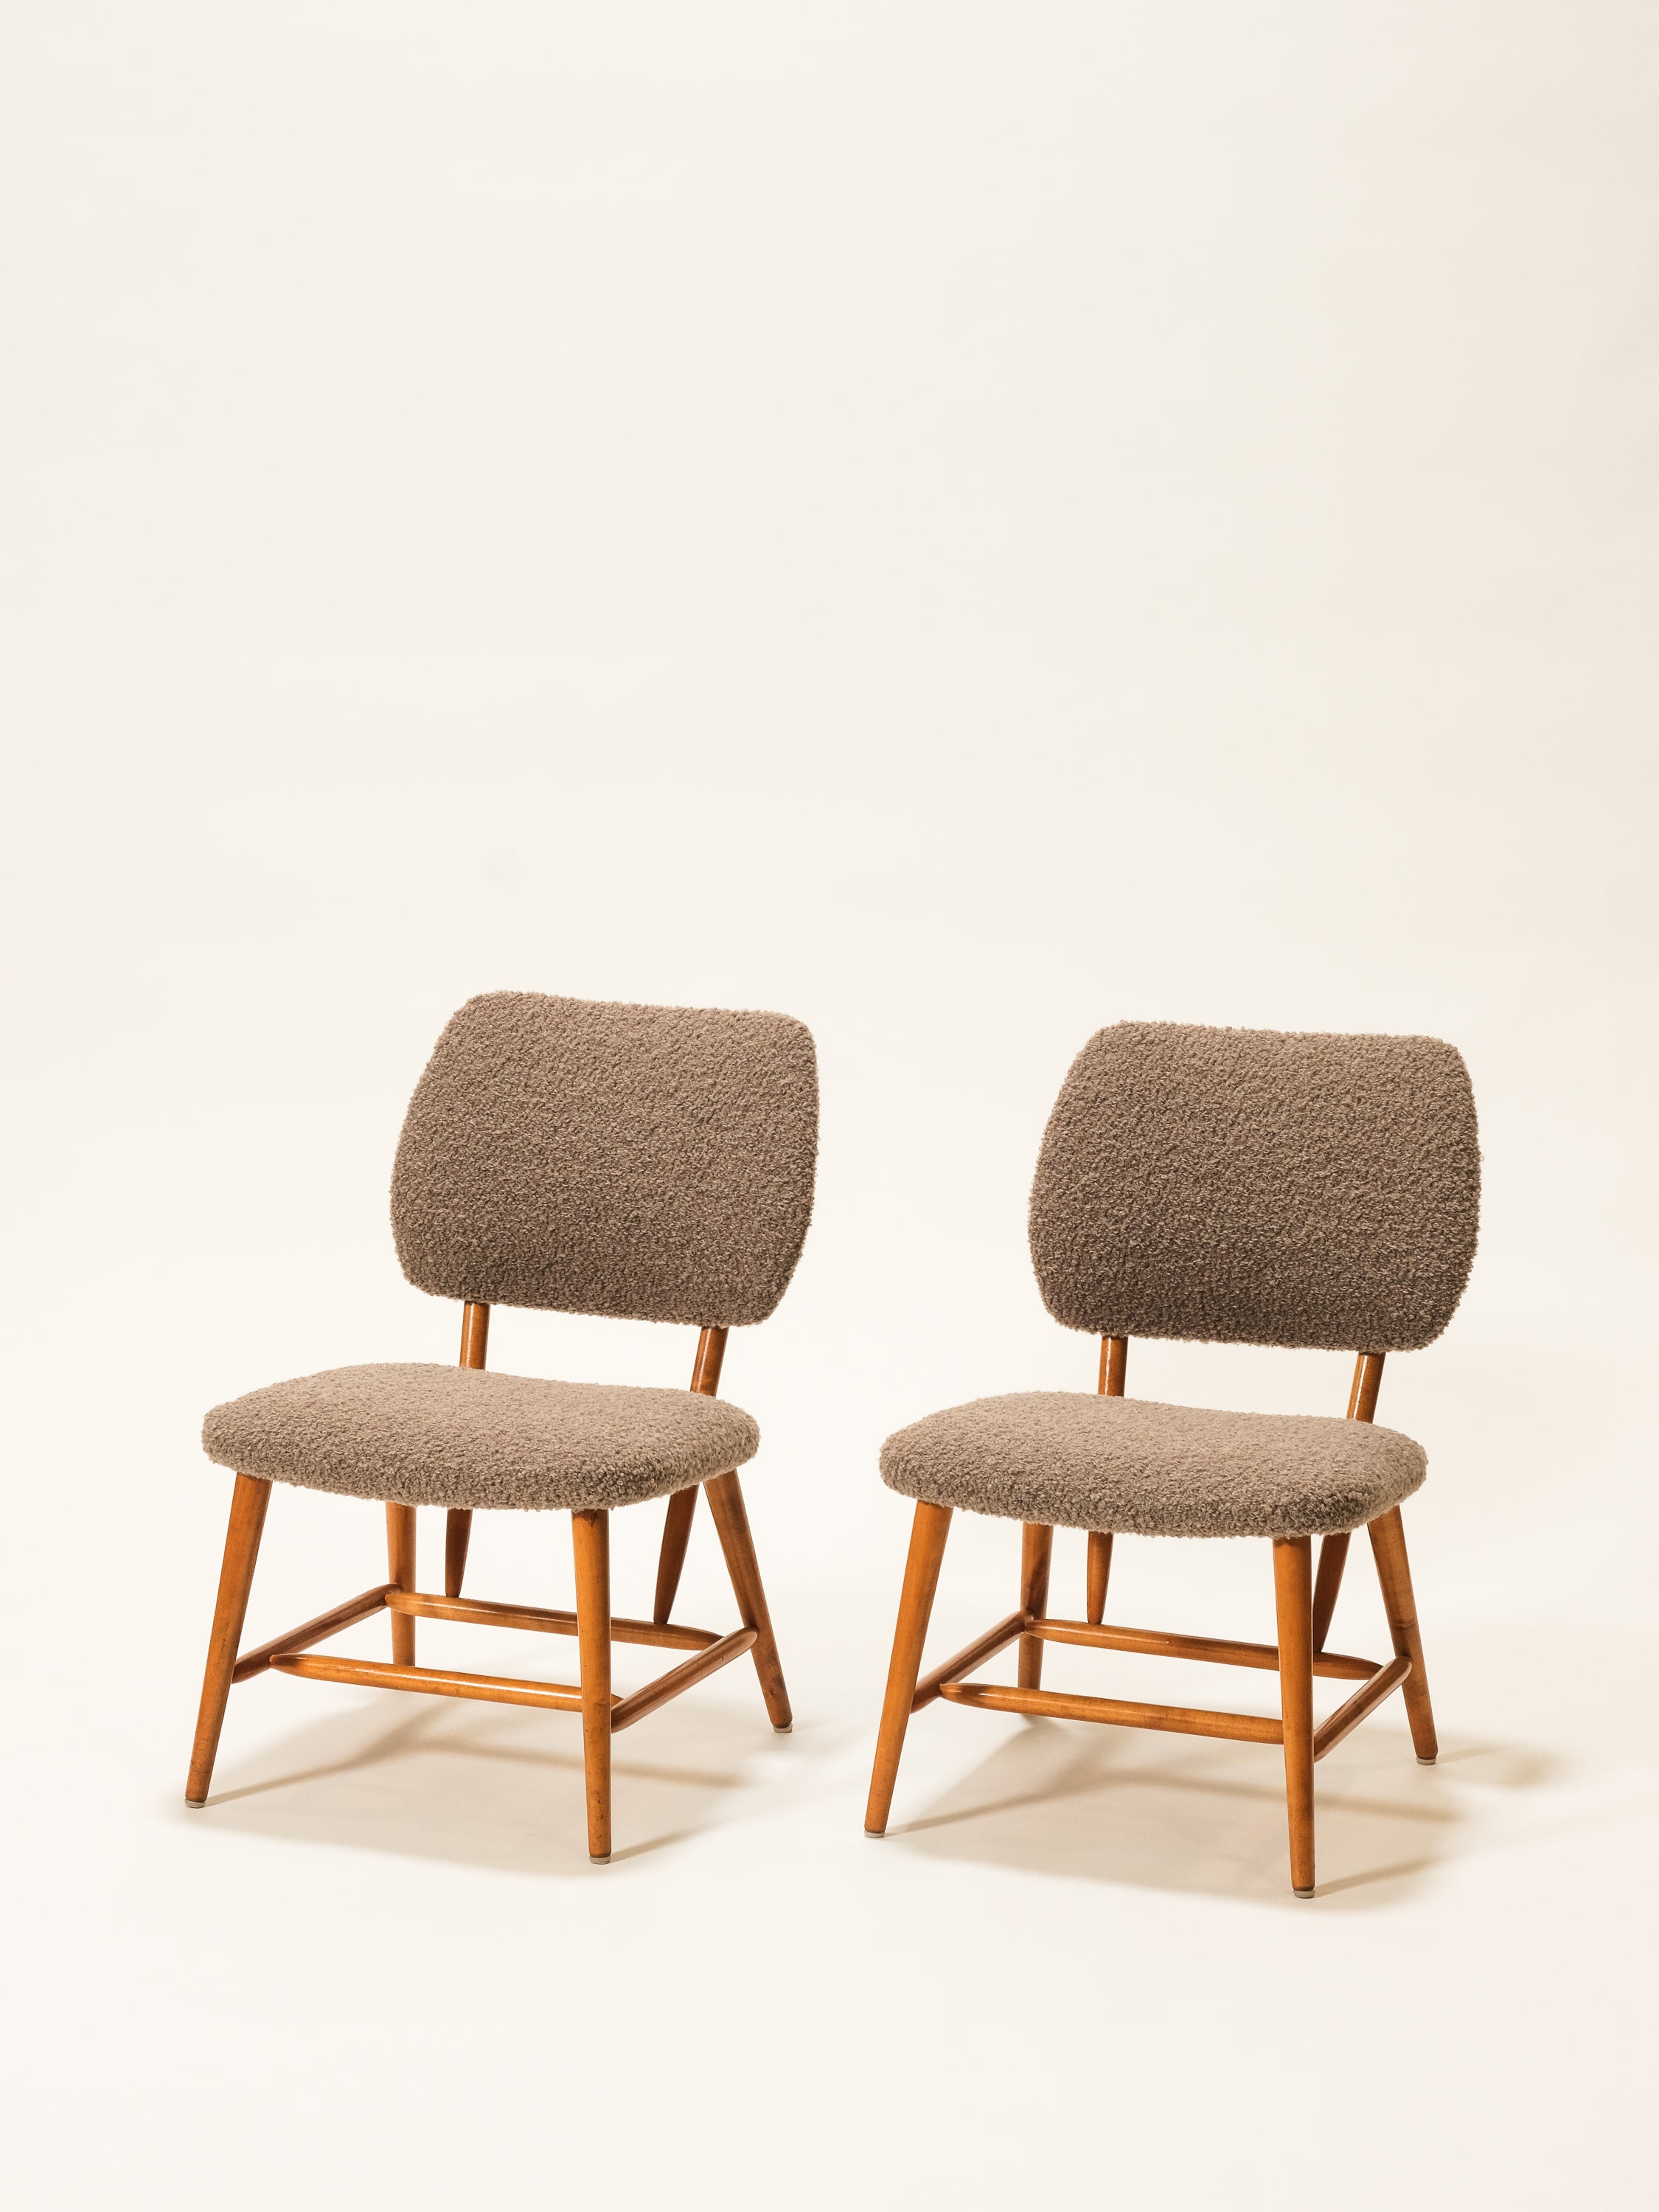 Pair of Easy Chairs by Engen, Örkelljunga, Sweden, 1960s